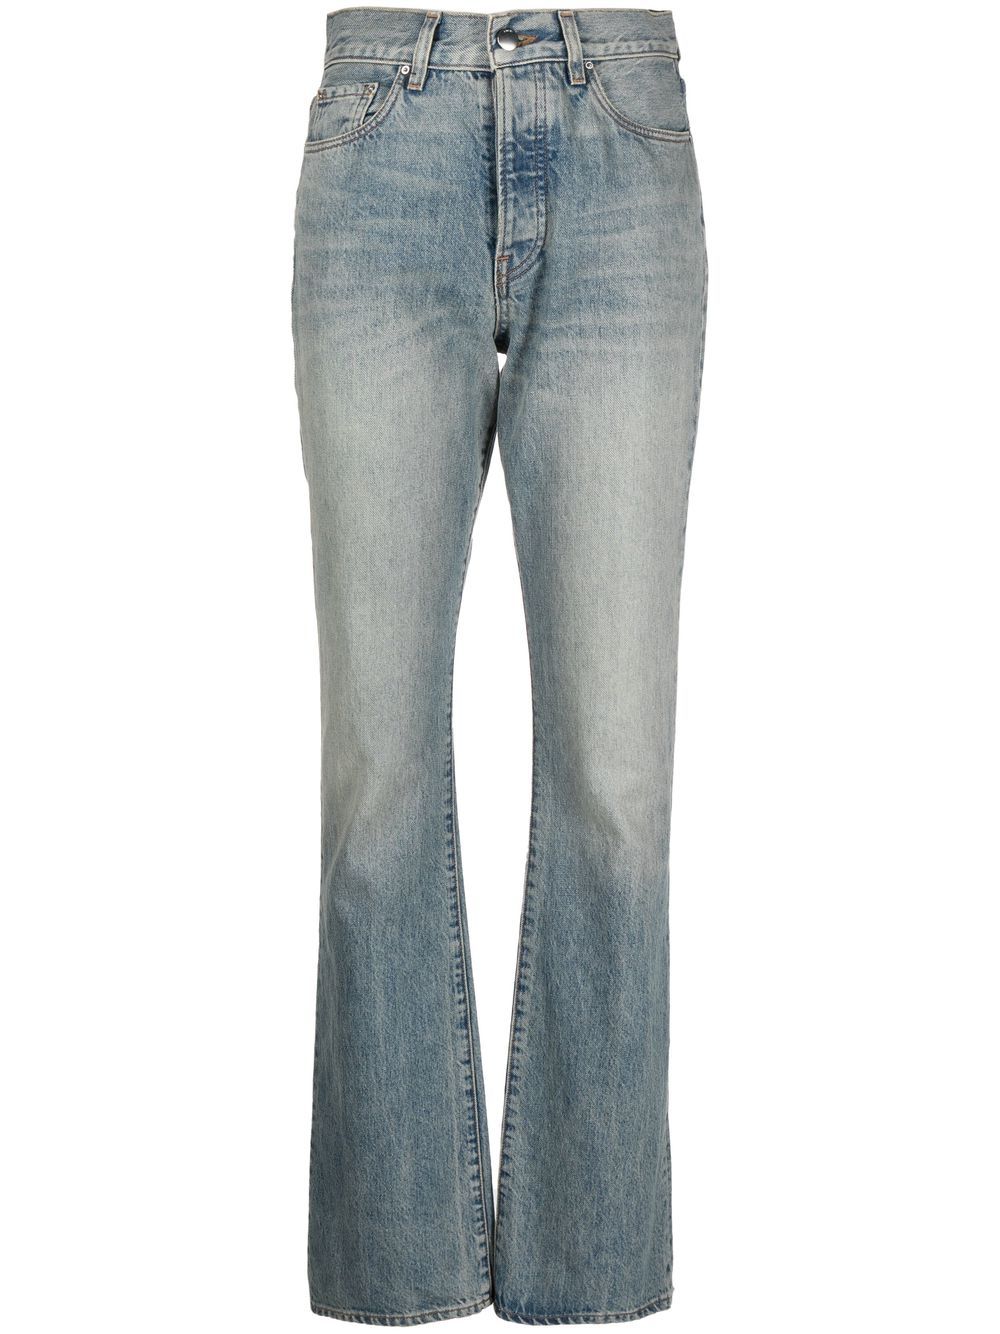 High-waist bootcut jeans